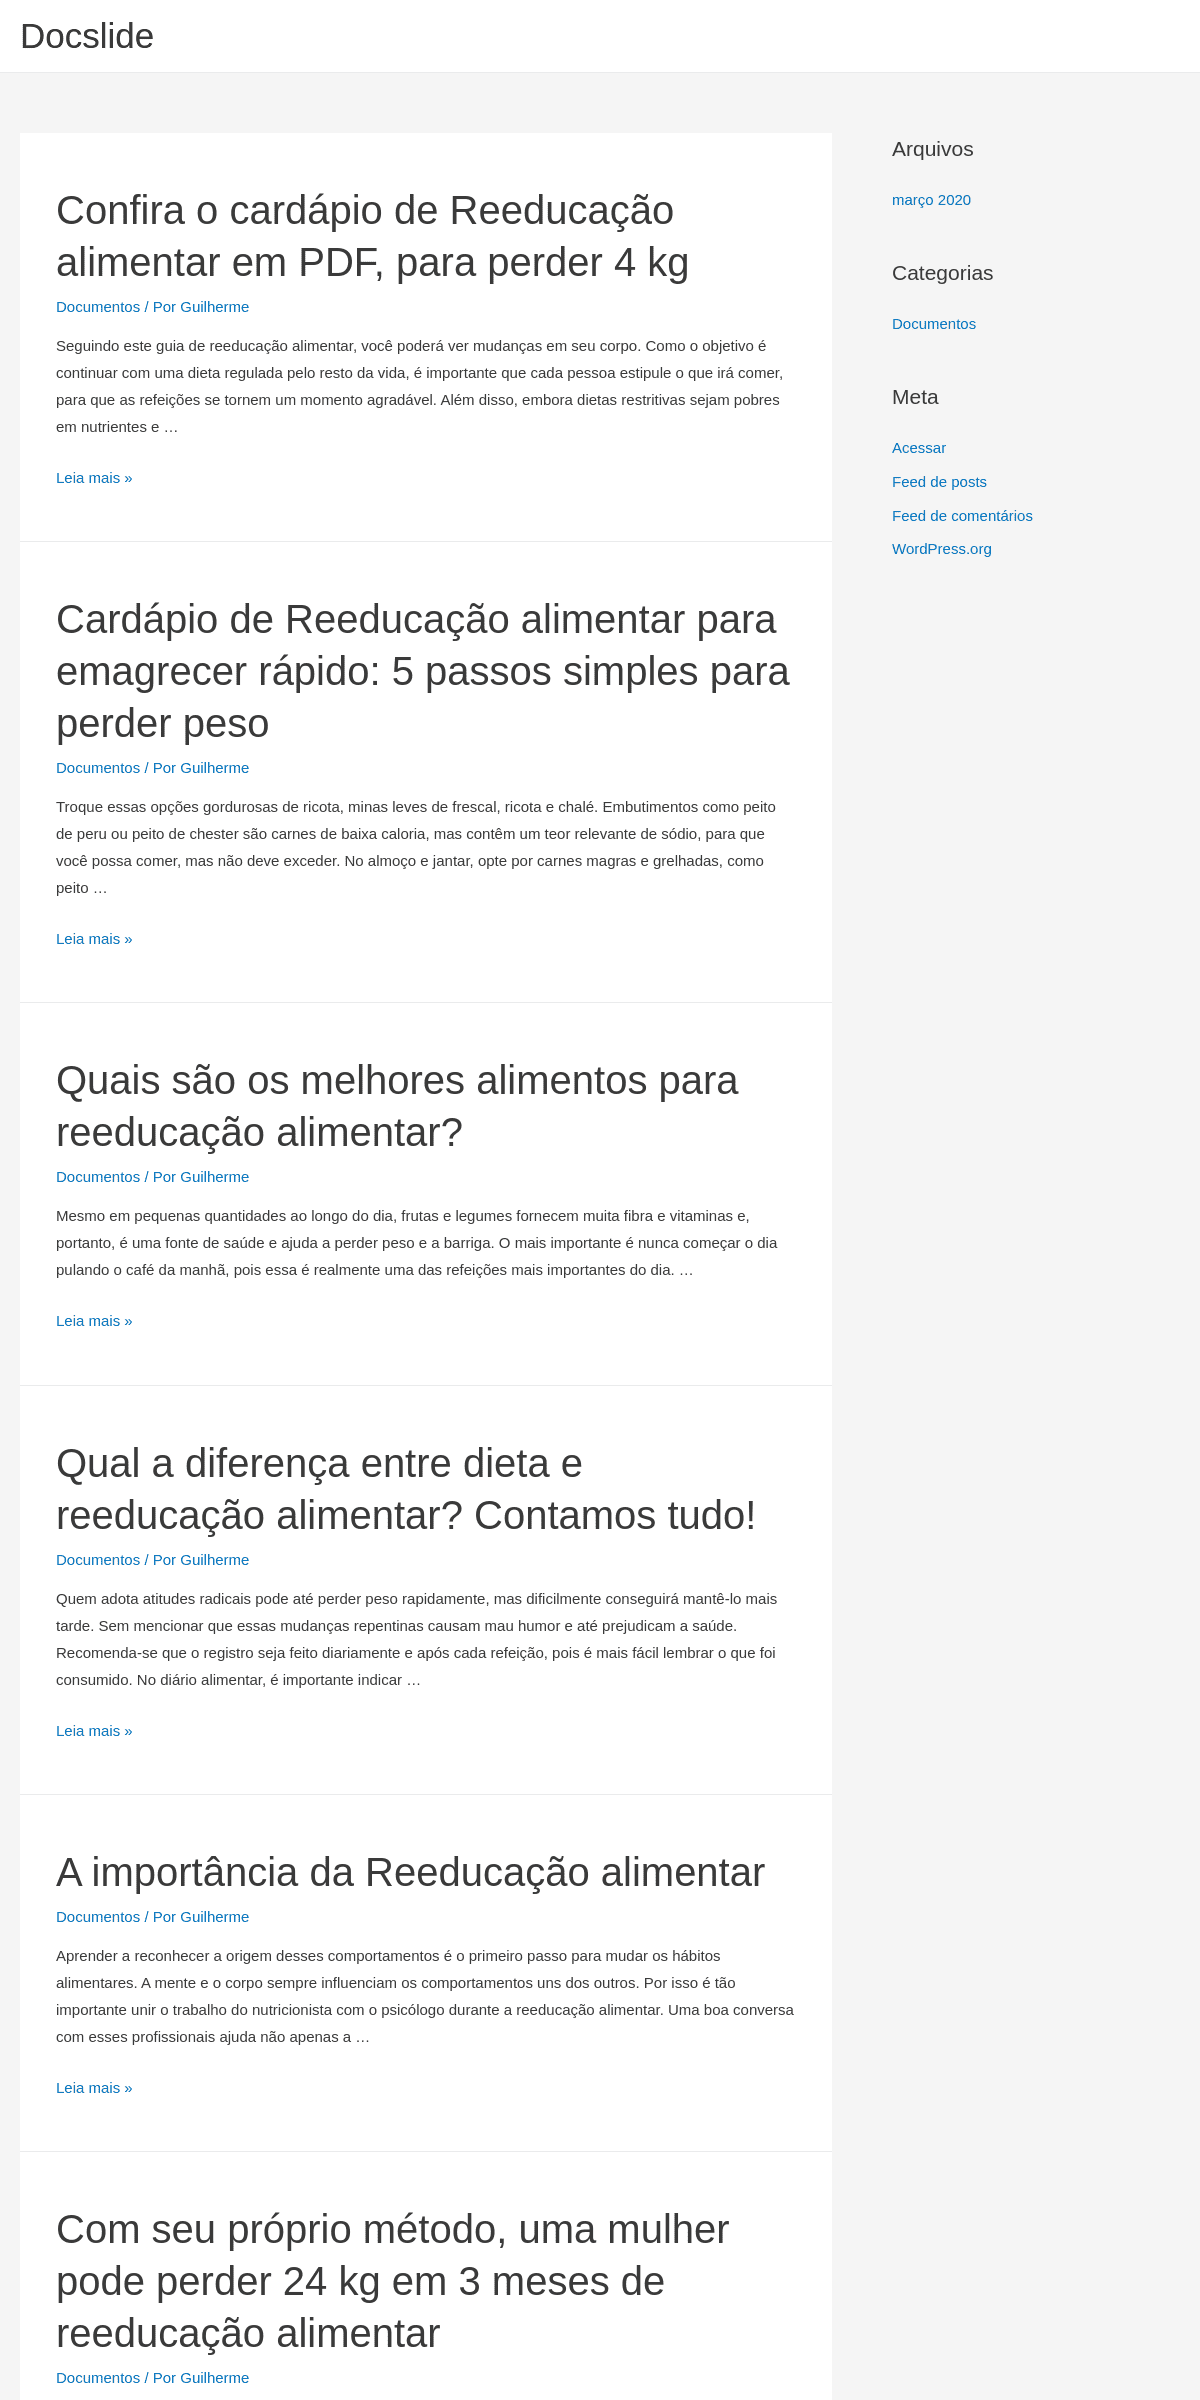 A complete backup of docslide.com.br